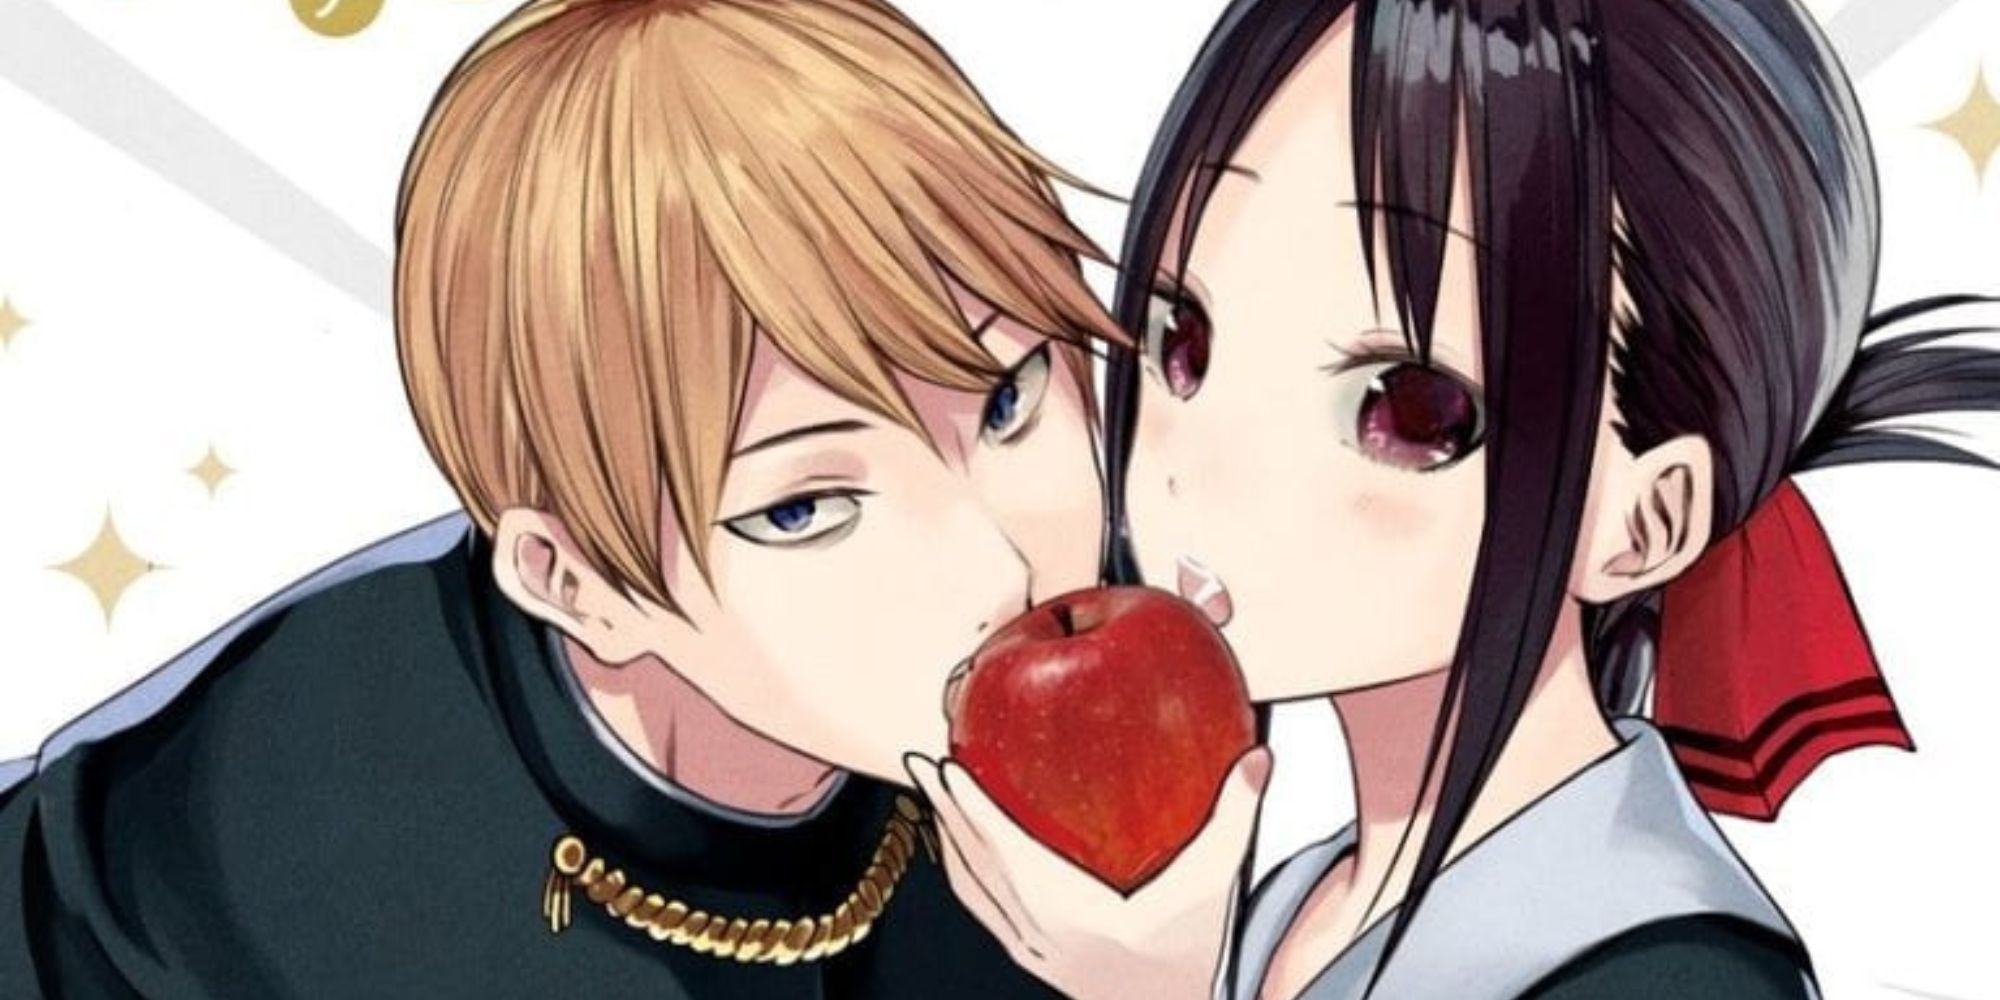 Kaguya-sama: Love is War manga by Aka Akasaka will end in the next